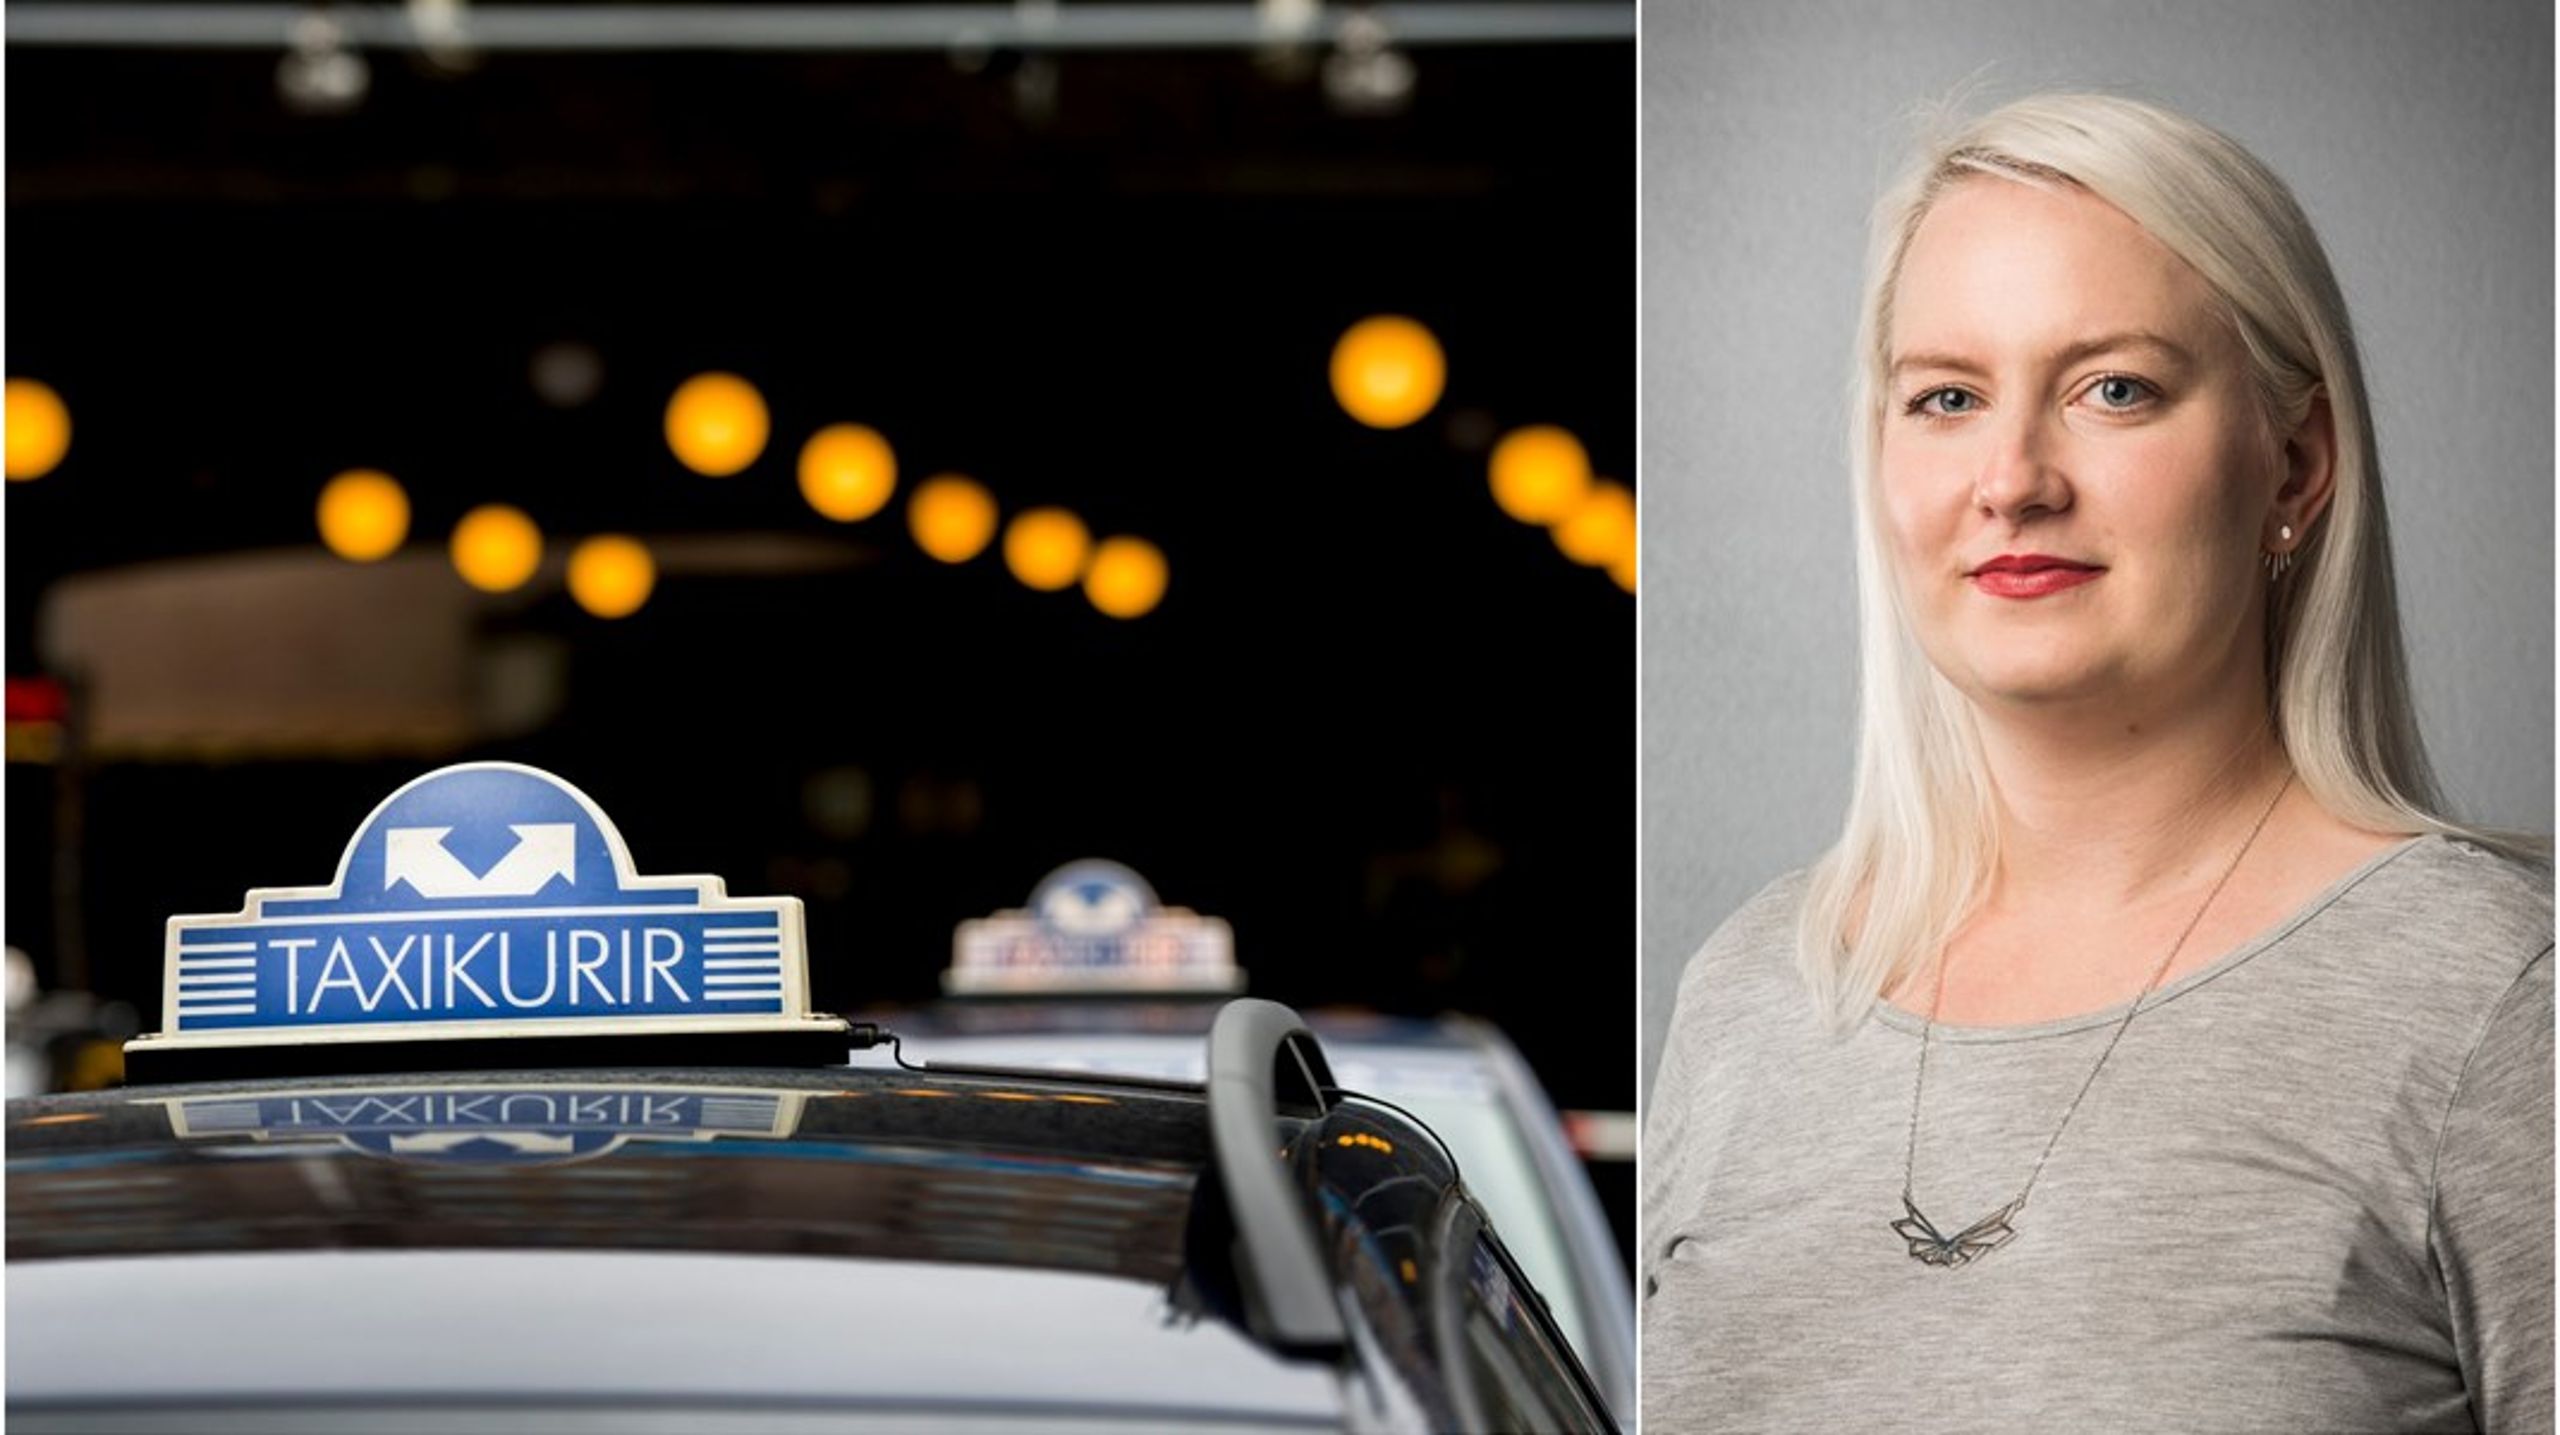 Det är en vanlig dag i Sverige och taxichaufförens bror har mördats.&nbsp;